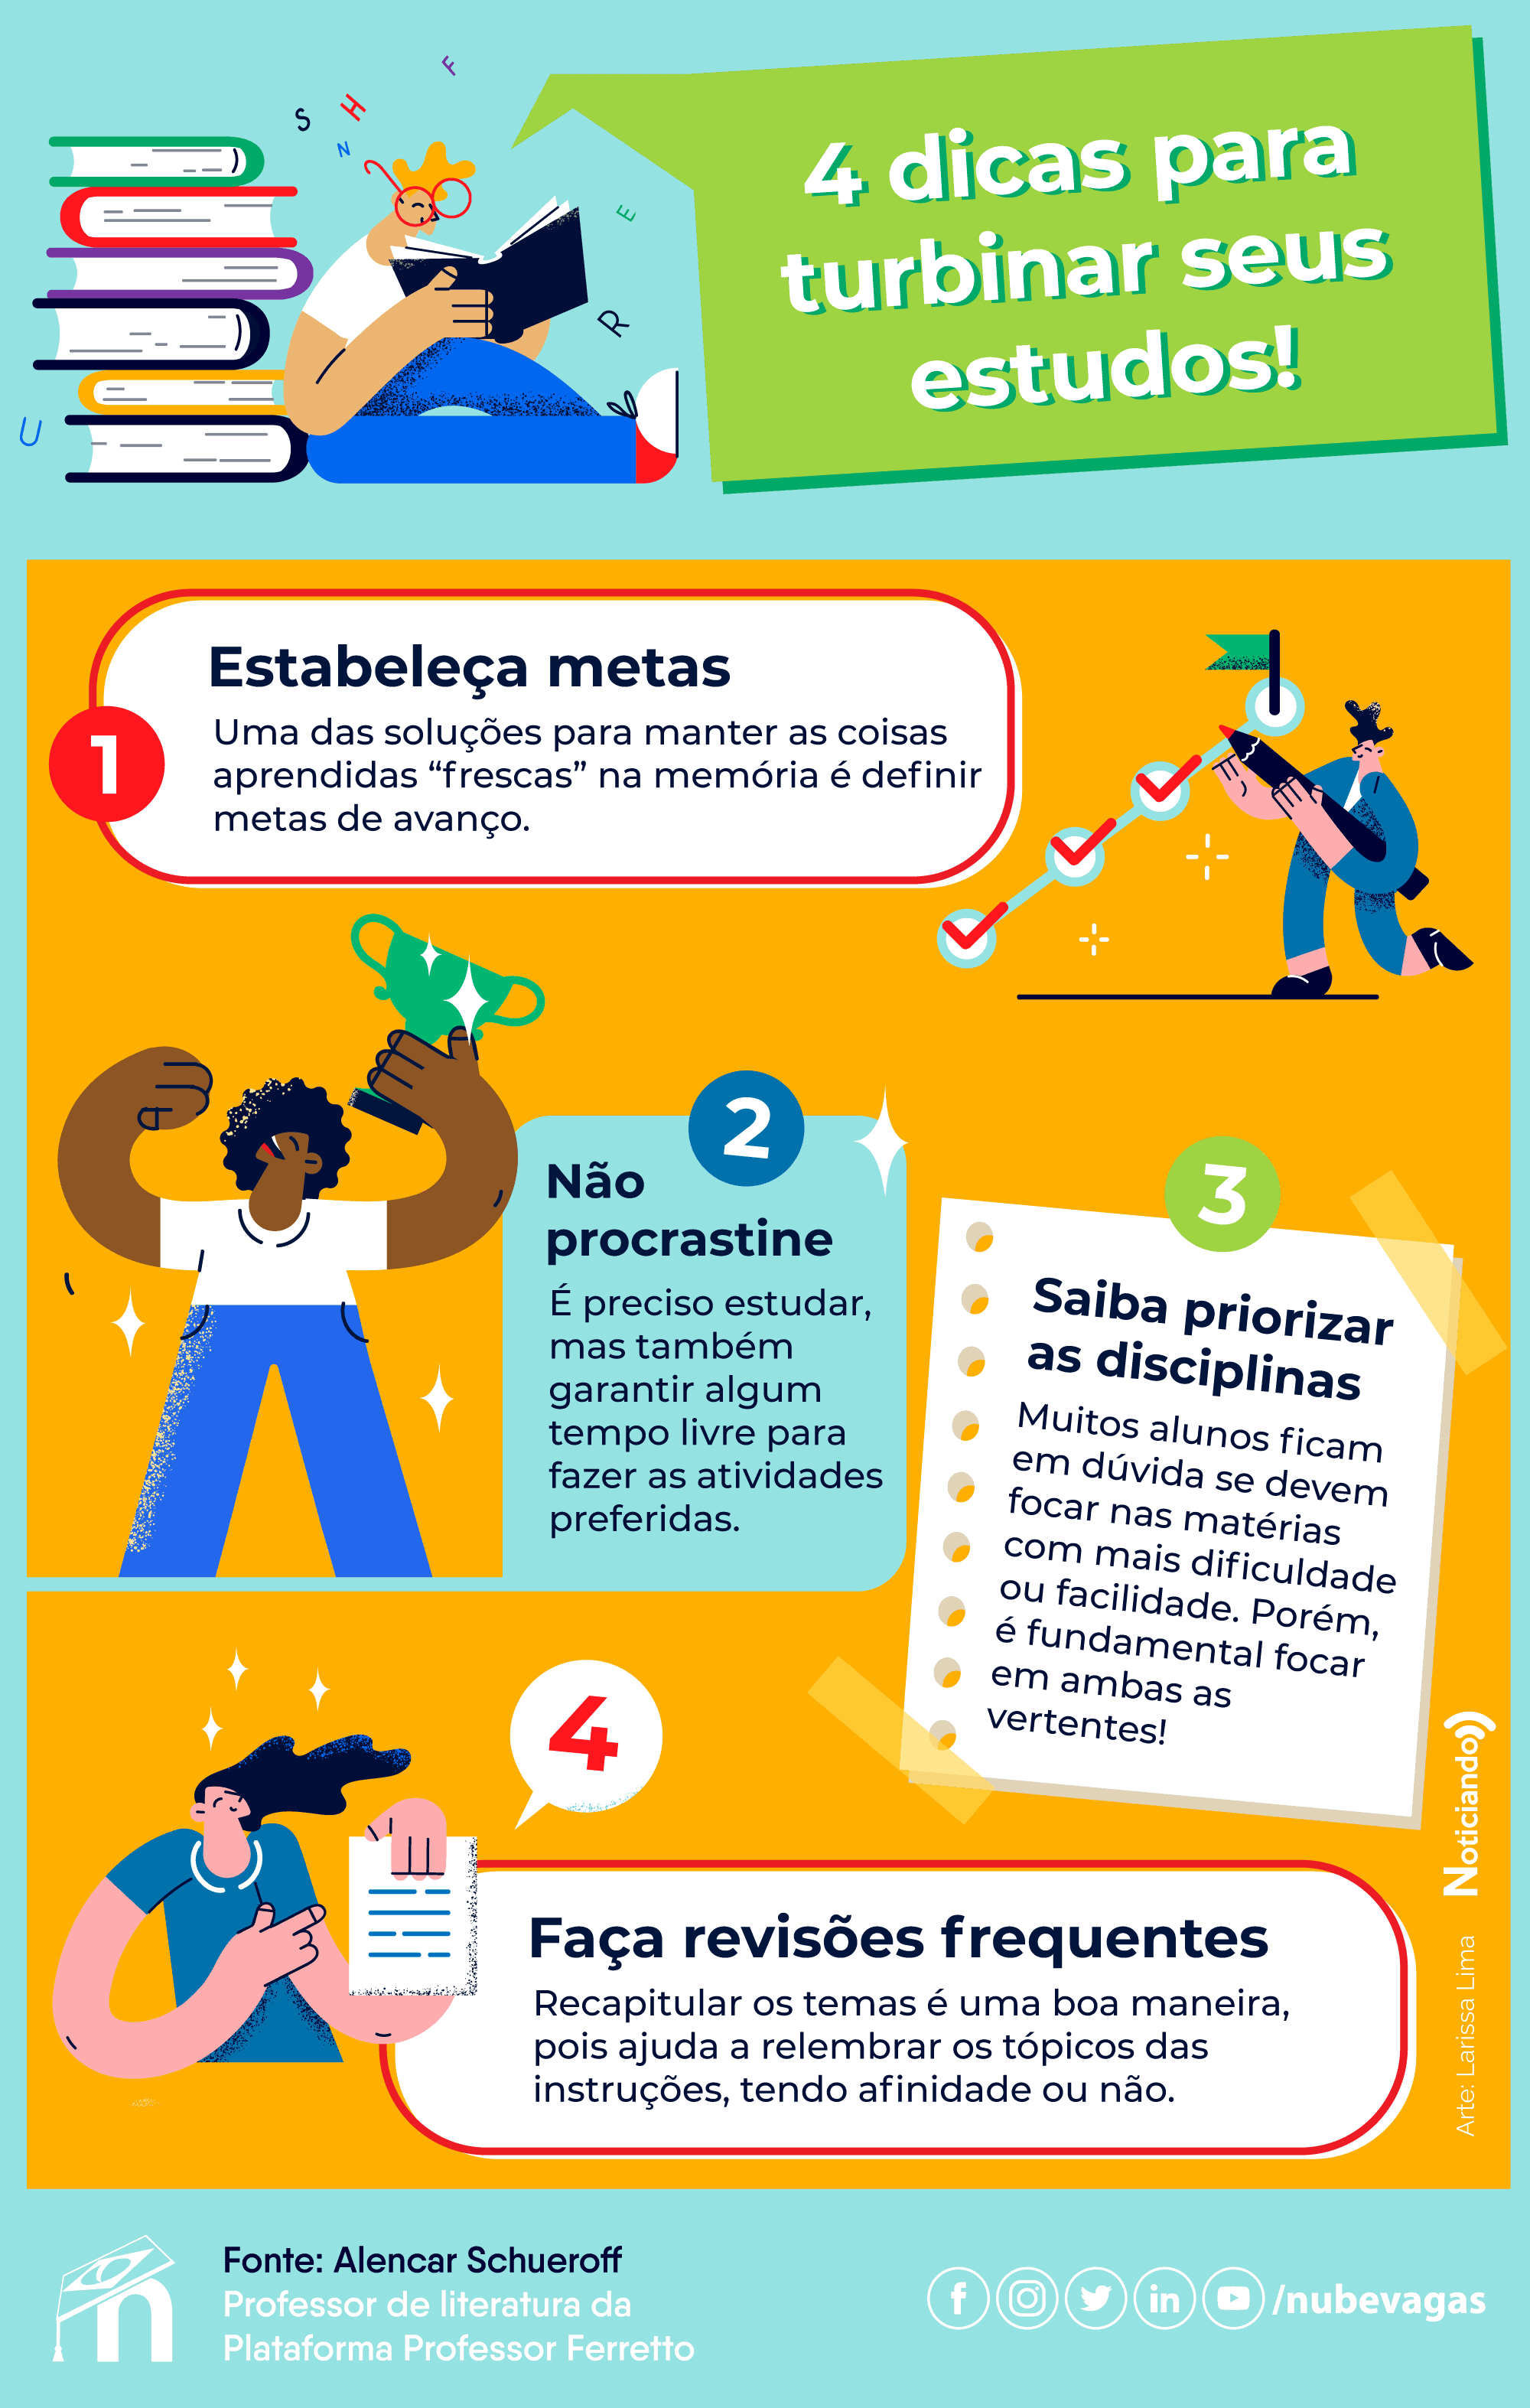 Infográfico ilustrado com 4 dicas para turbinar seus estudos